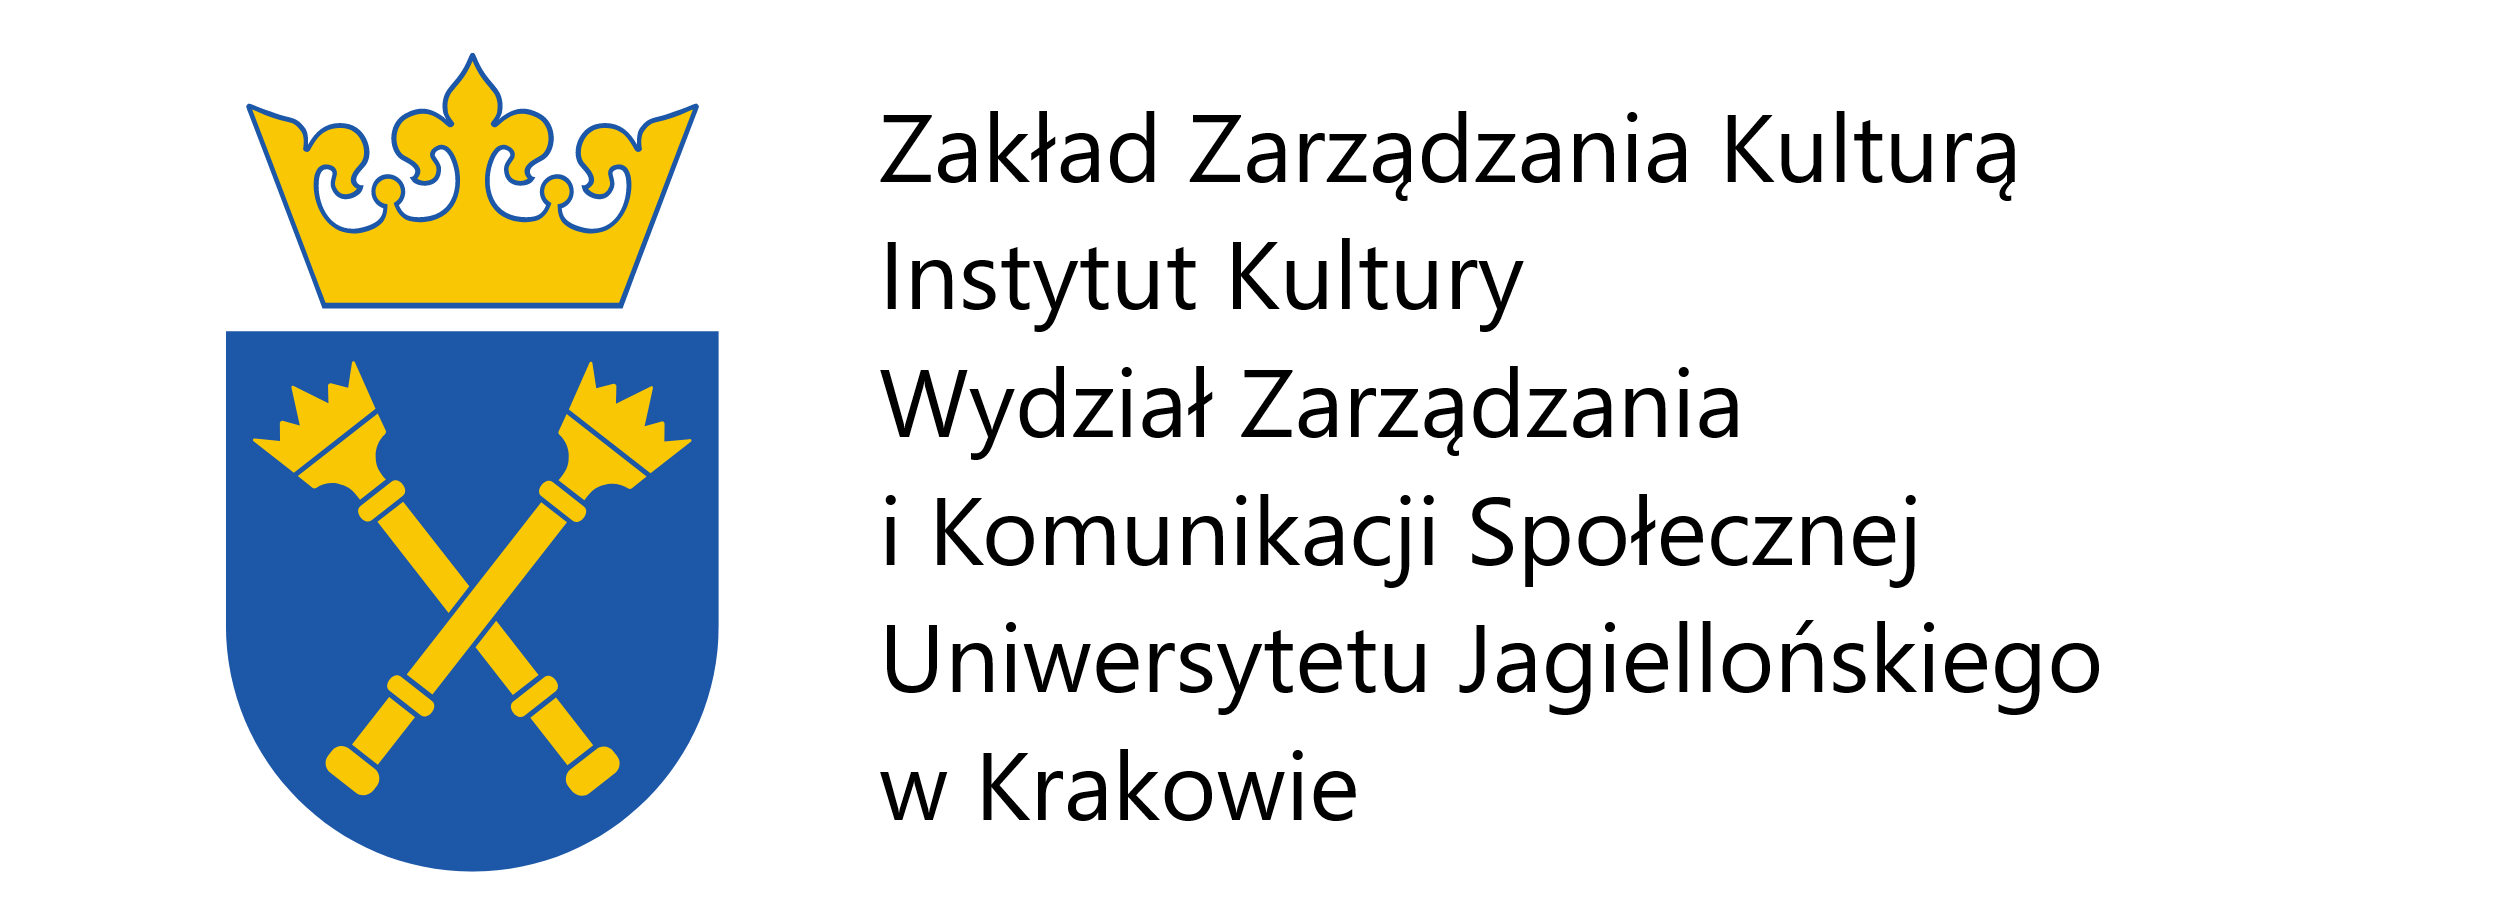 Zakład Zarządzania Kulturą Instytut Kultury Wydział Zarządzania i Komunikacji Społecznej Uniwersytetu Jagiellońskiego w Krakowie